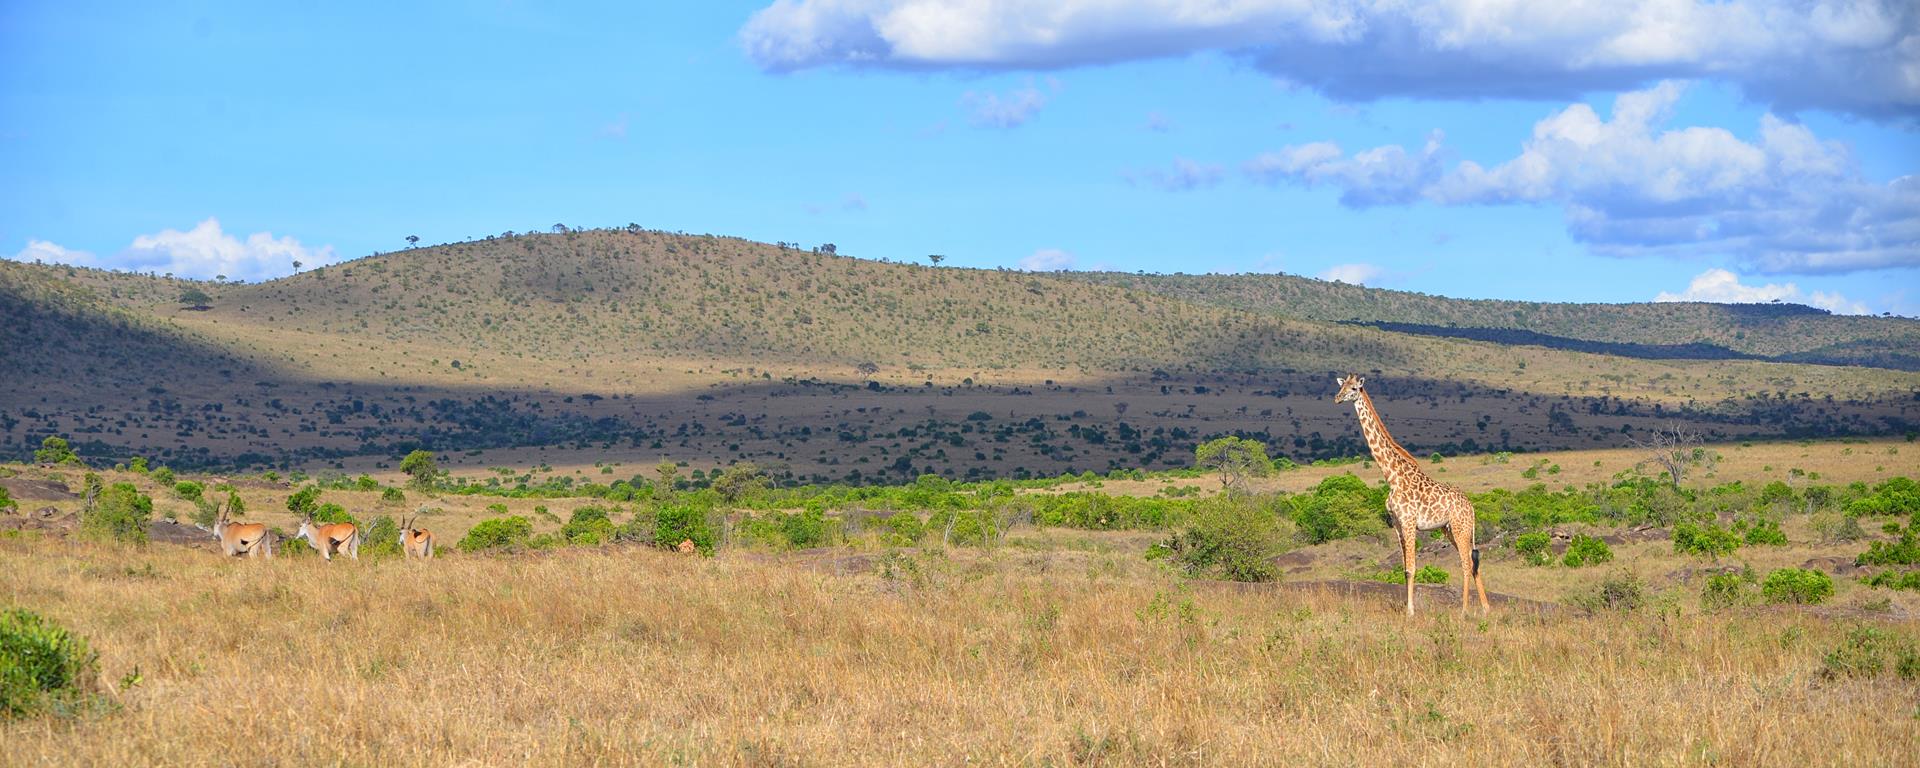 Фотокартина Панорама  в заповеднике «Масаи Мара»